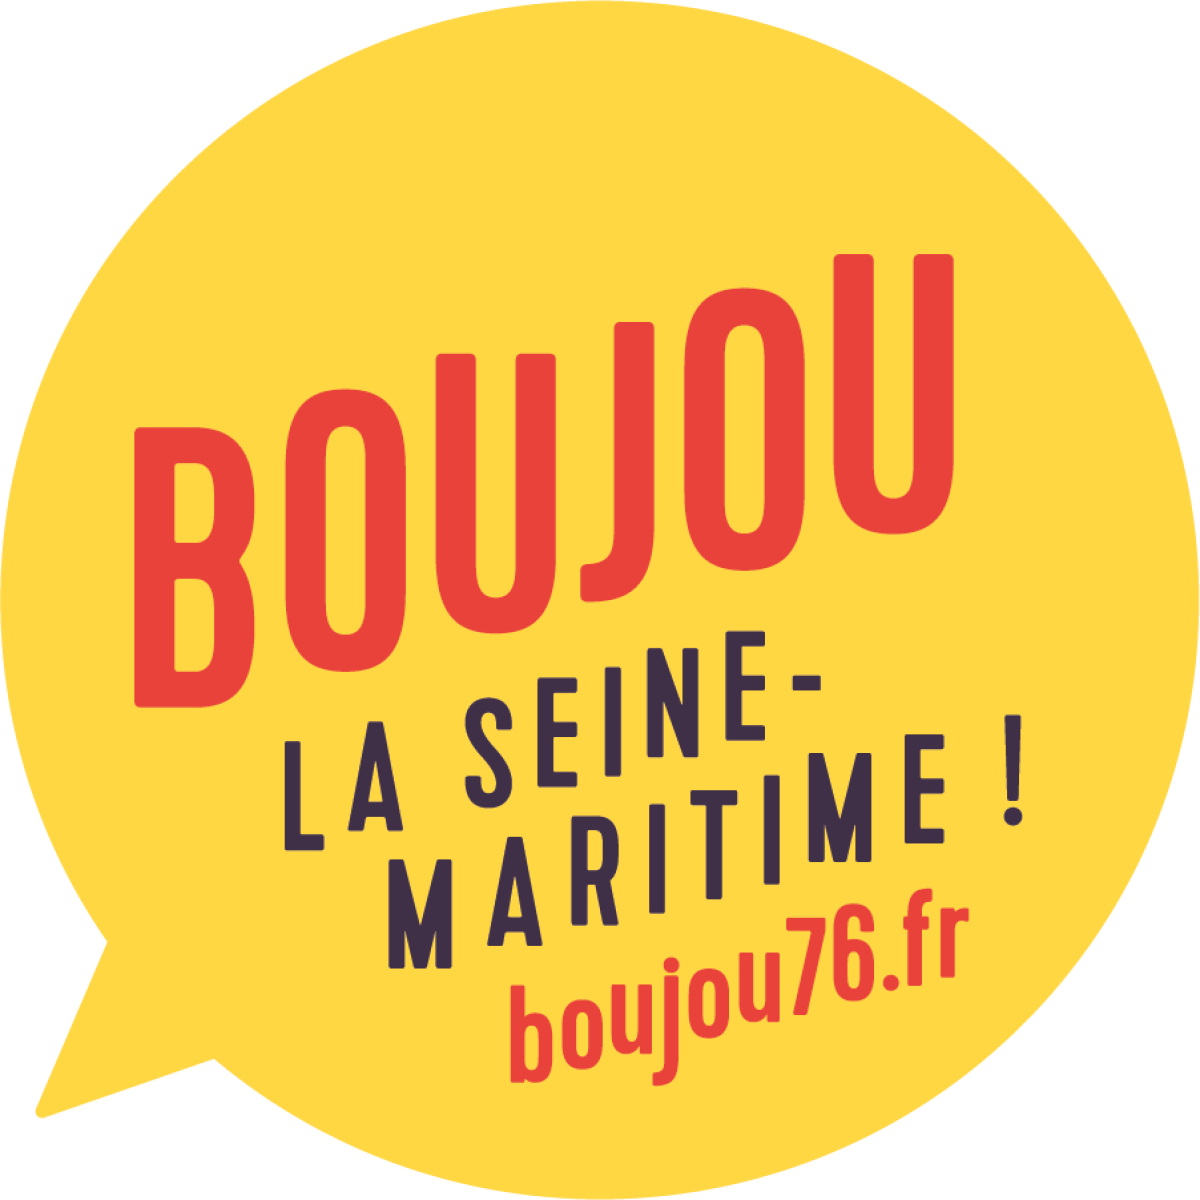 Seine-Maritime : Le Département lance une compagne de communication pour promouvoir l’Armada | La Gazette Normandie